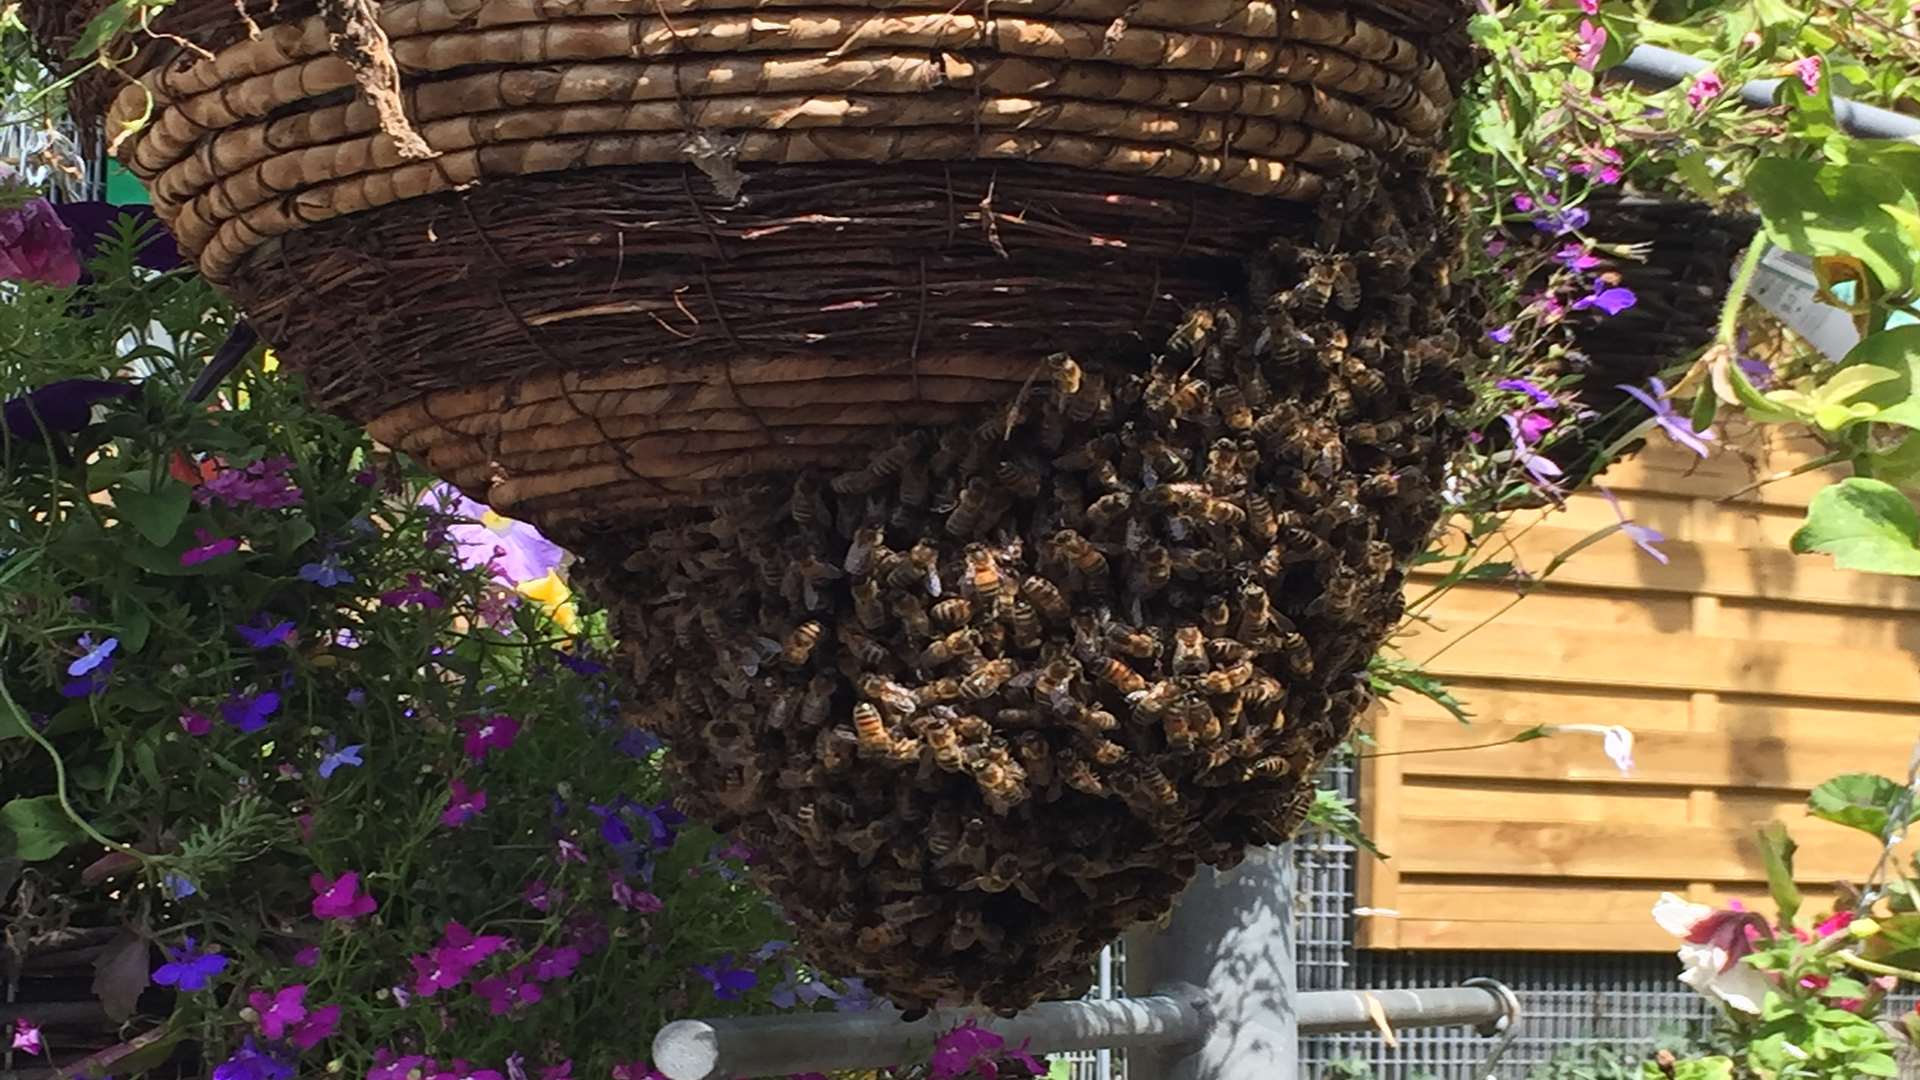 Bees took refuge under a hanging basket. Pic: Nik Fowden